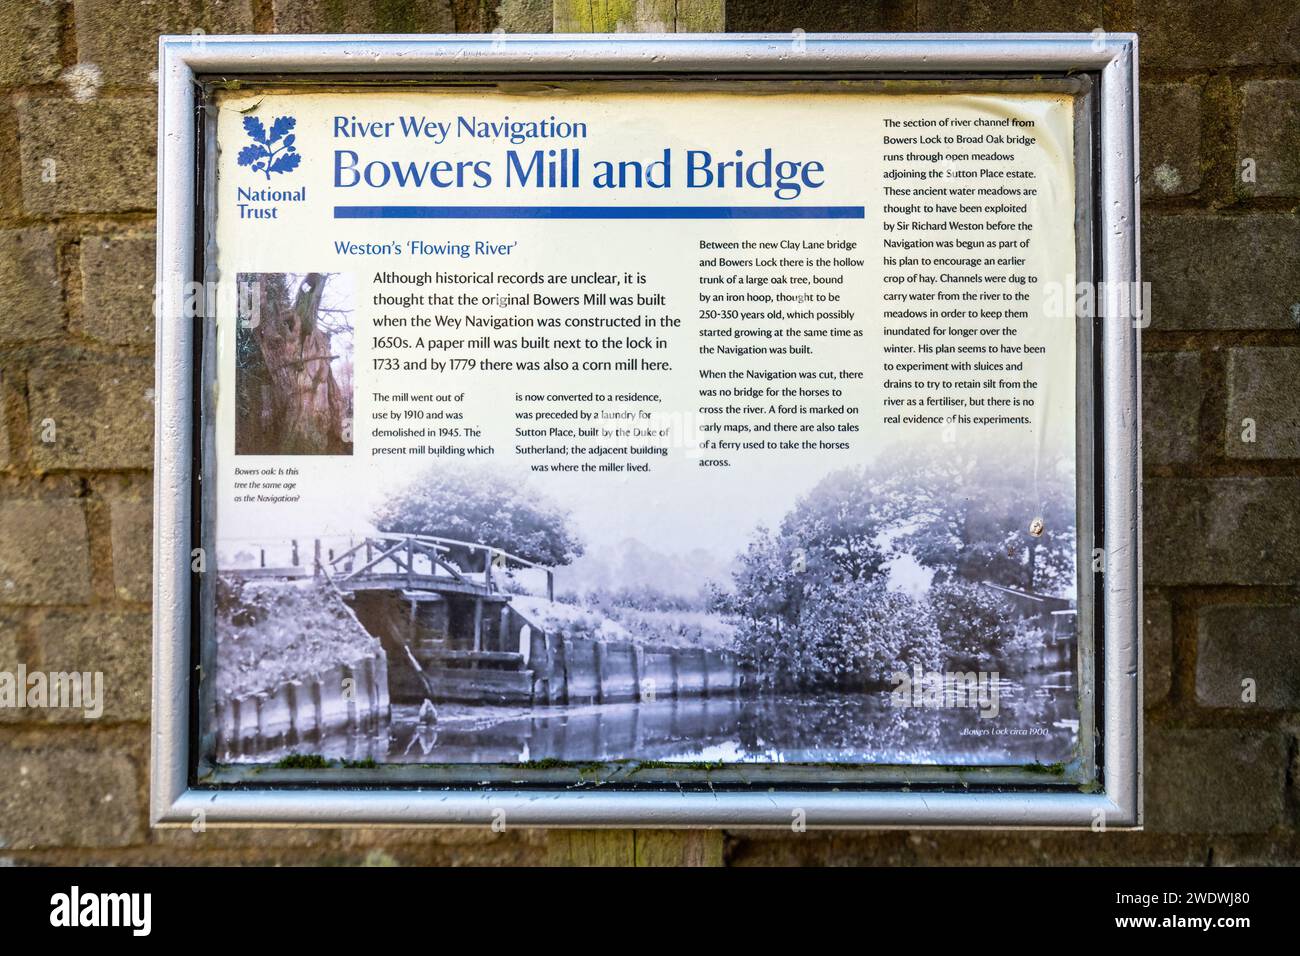 Panneau d'information à Bowers Mill and Bridge près de Bowers Lock sur la rivière Wey navigation près de Guildford, Surrey, Angleterre, Royaume-Uni Banque D'Images